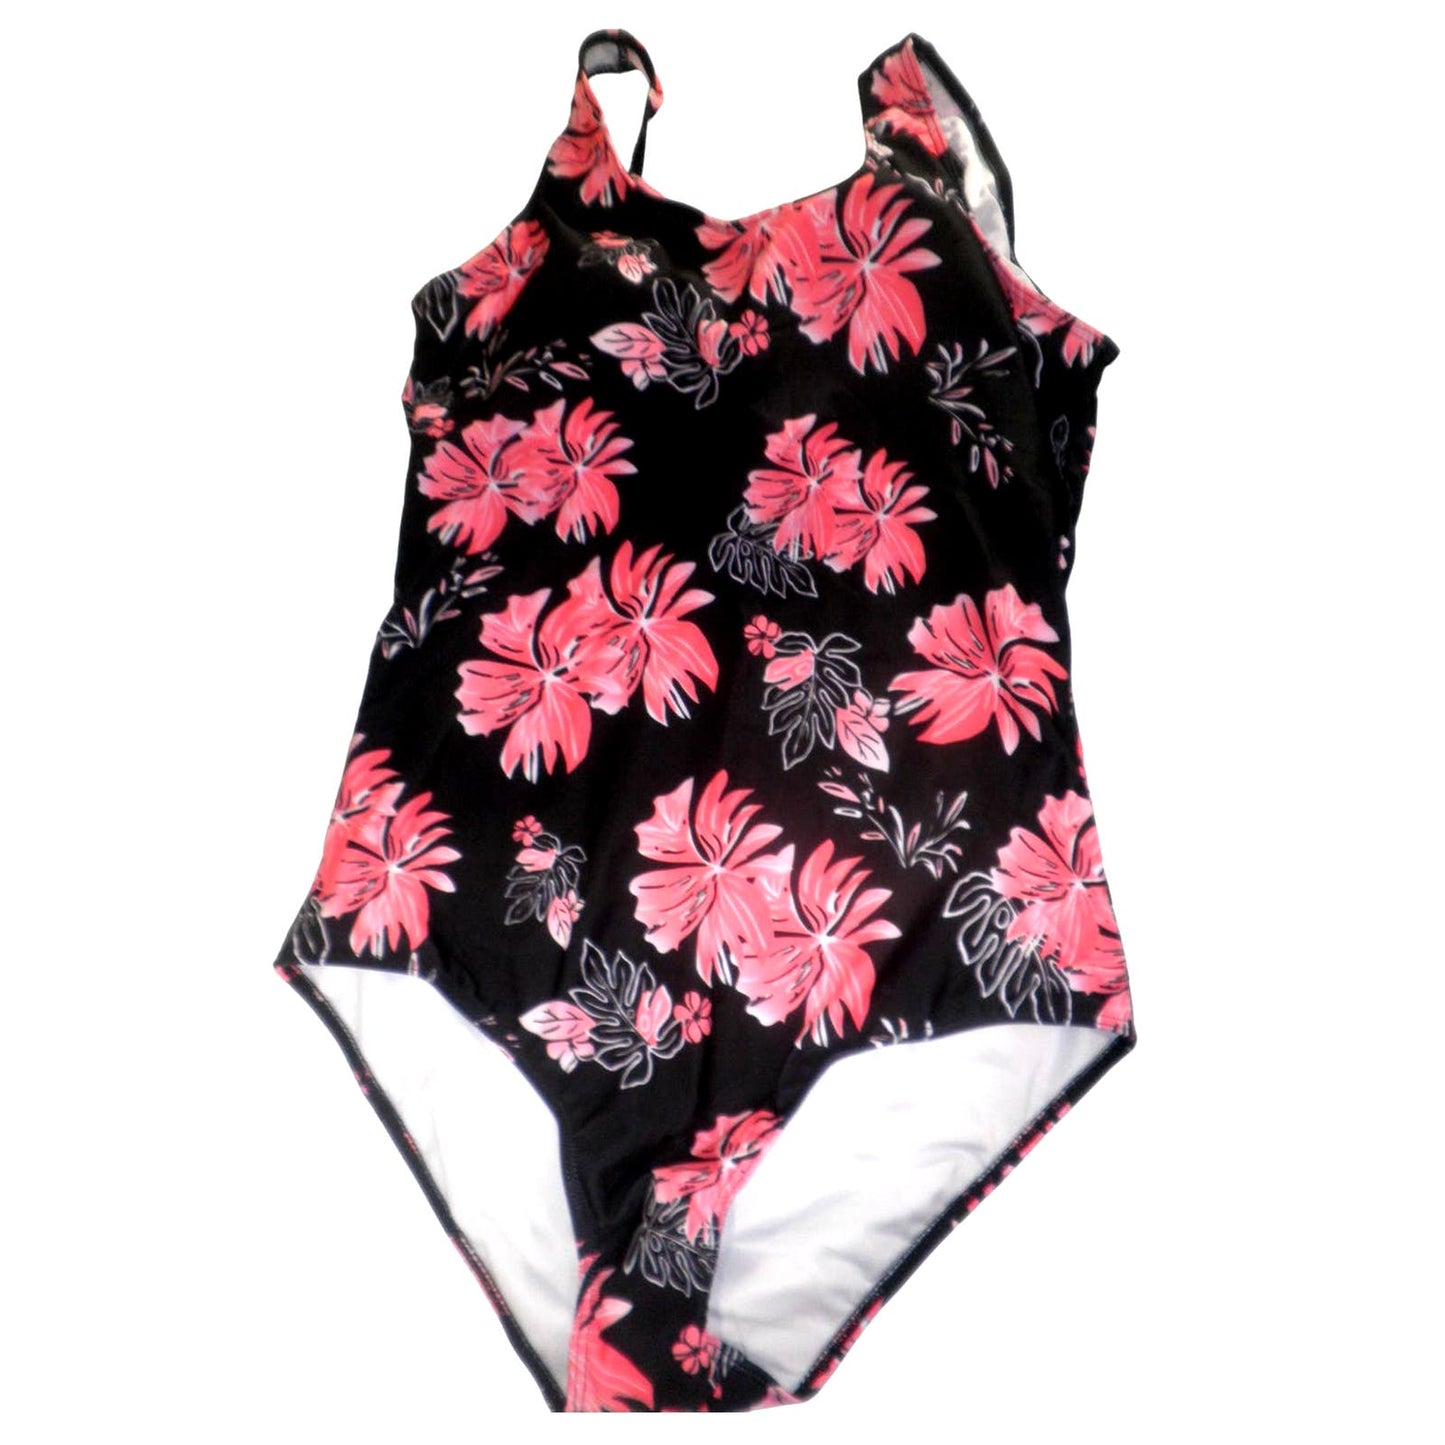 One Piece Bathing Suit Criss Cross Back Swimsuit Women Athletic Swimwear L 10-12